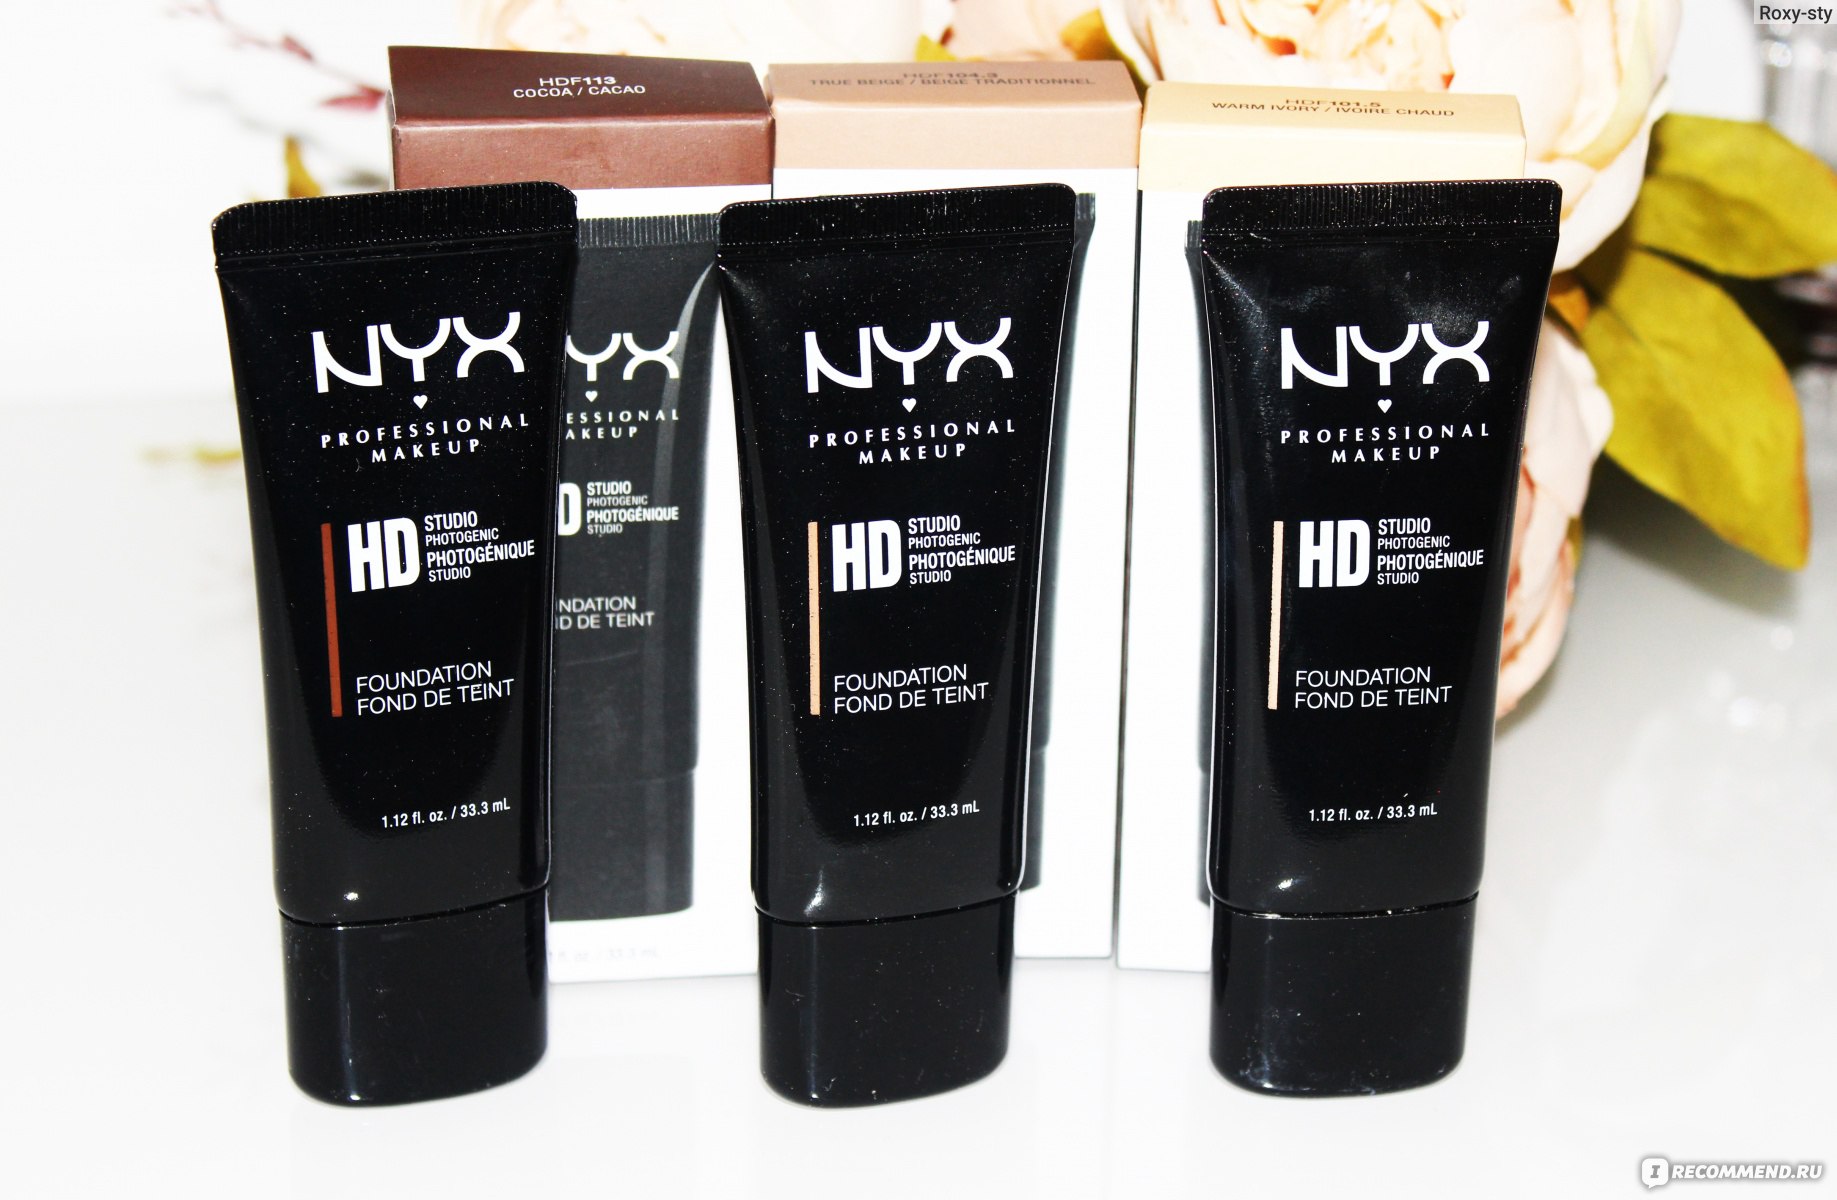 Консилер от nyx professional makeup - обзор трех вариантов. какой лучше маскирует? - отзывы о косметике